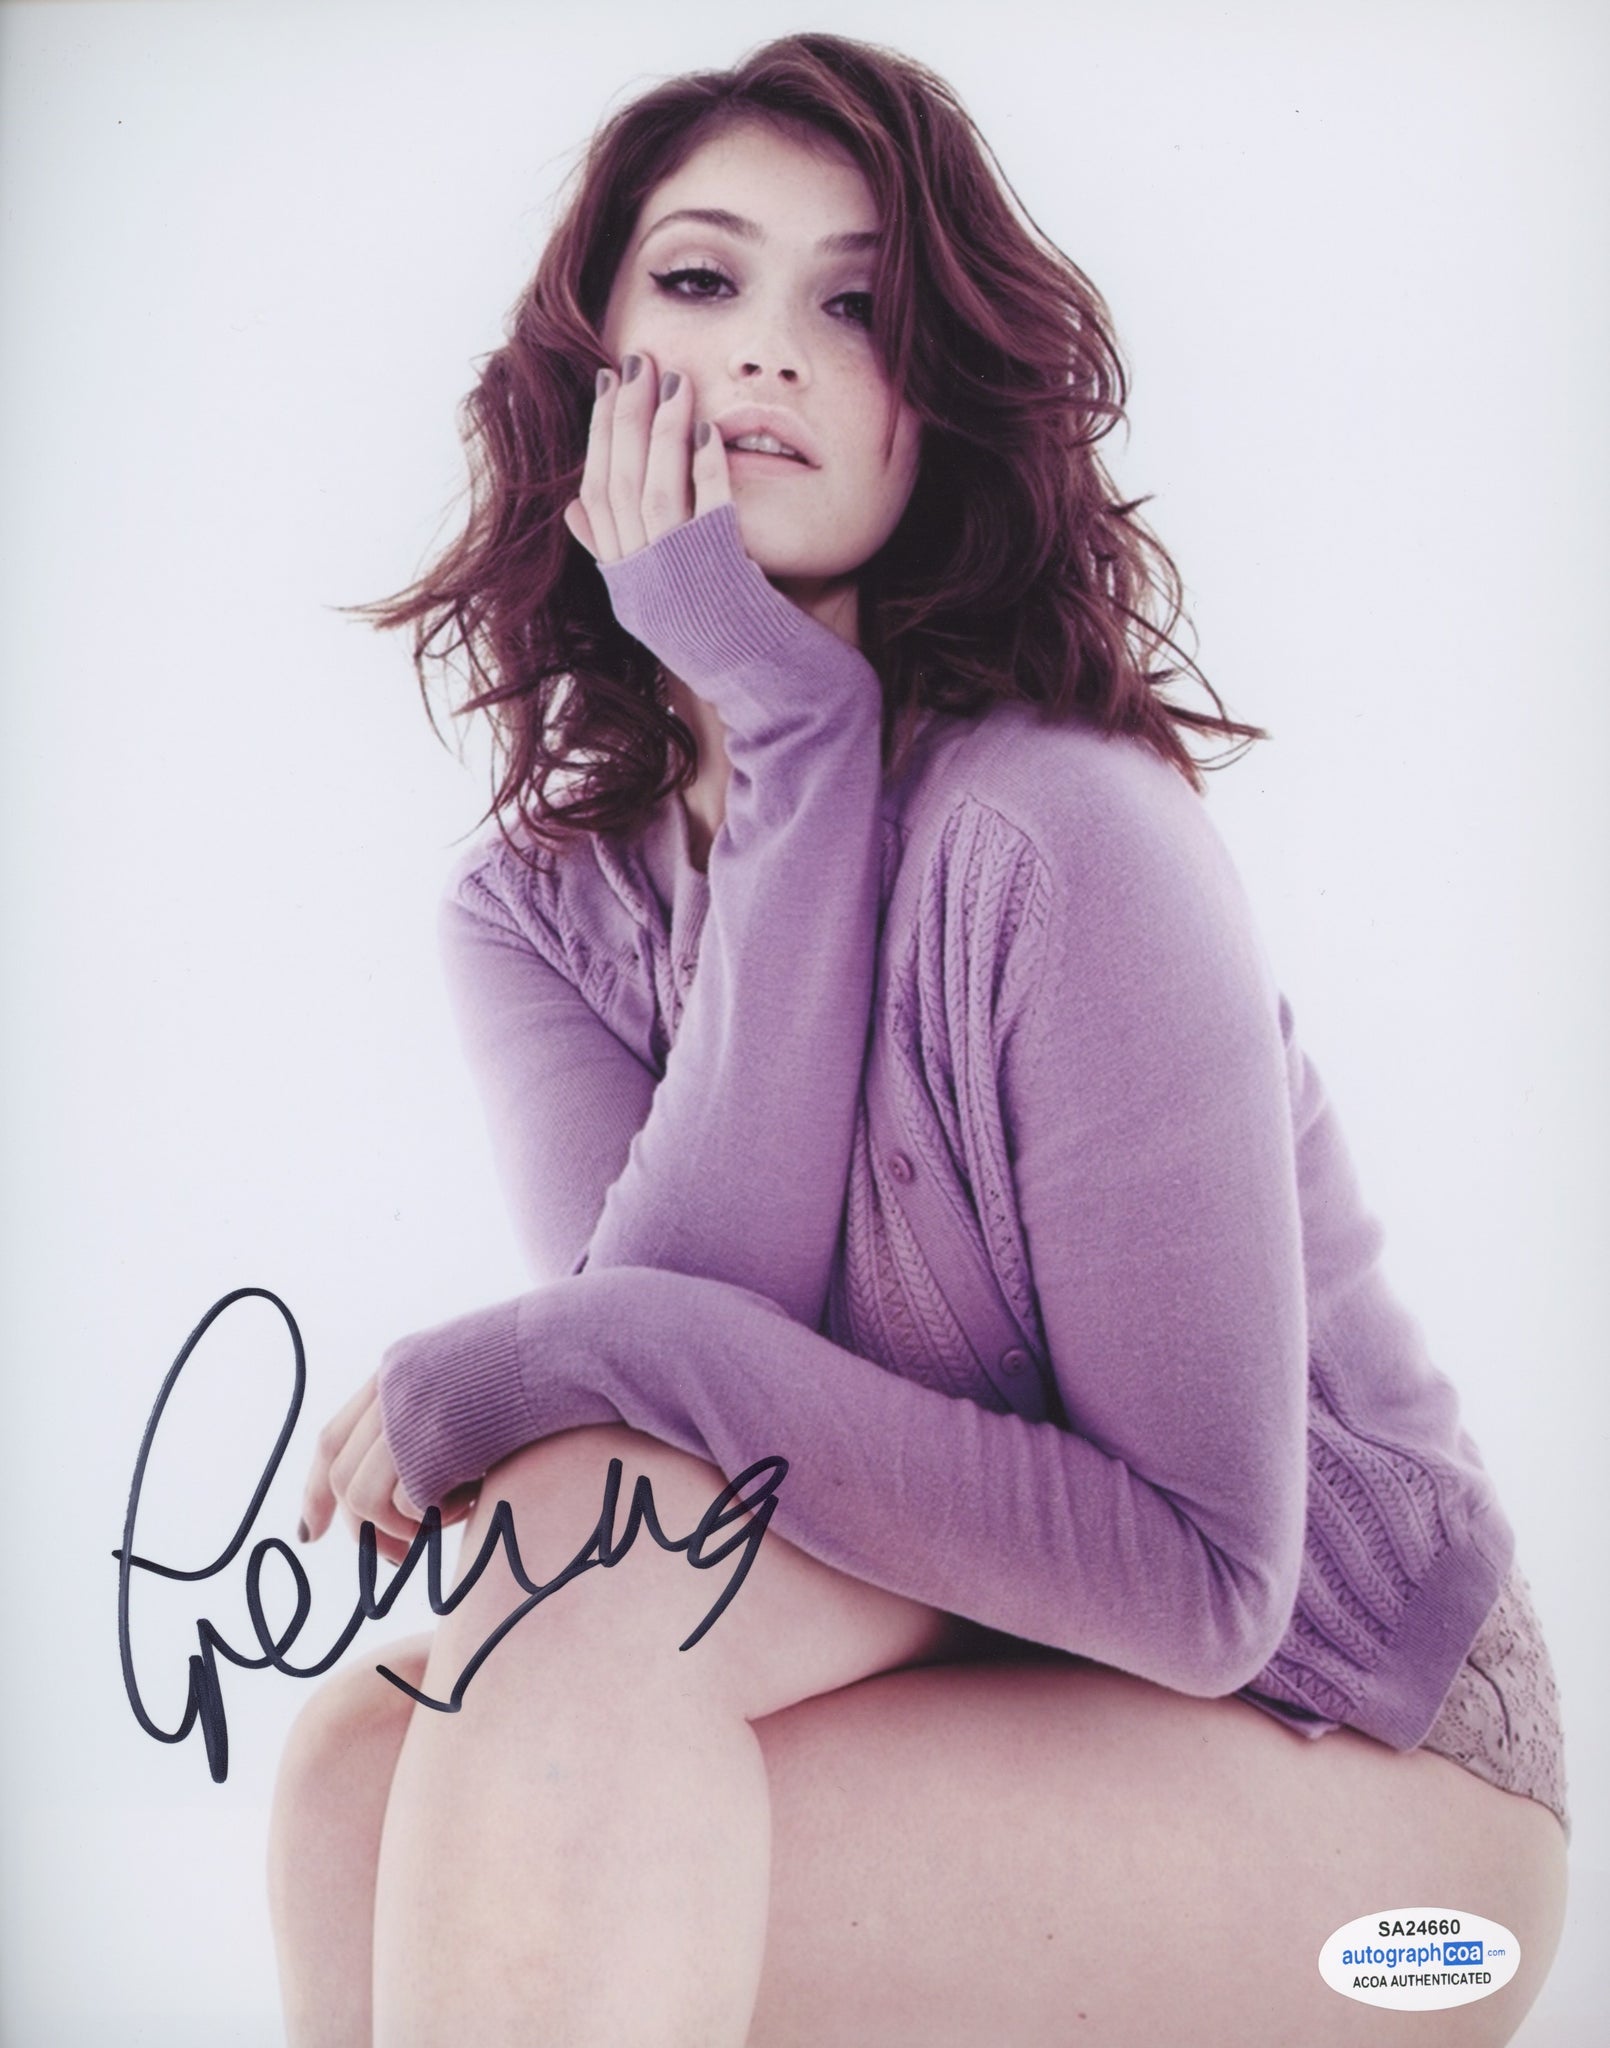 Gemma Arterton Bond Signed Autograph 8x10 Photo Sexy ACOA #7 - Outlaw Hobbies Authentic Autographs